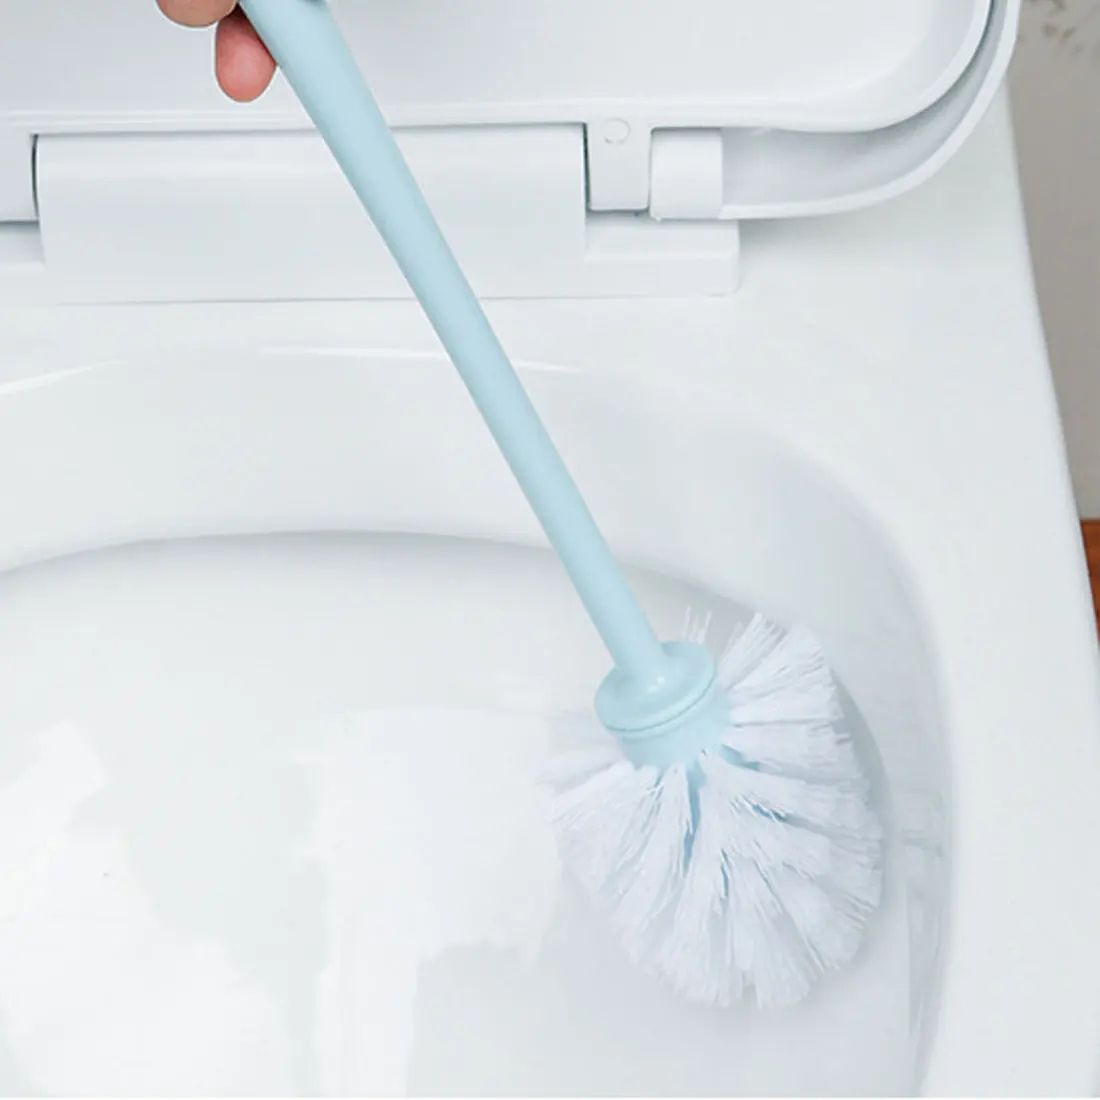 Wc čistiaca kefa s plastovými dlhá rukoväť wc kefa na umývanie wc wc čistenie kefkou bez slepej uličky čistenie